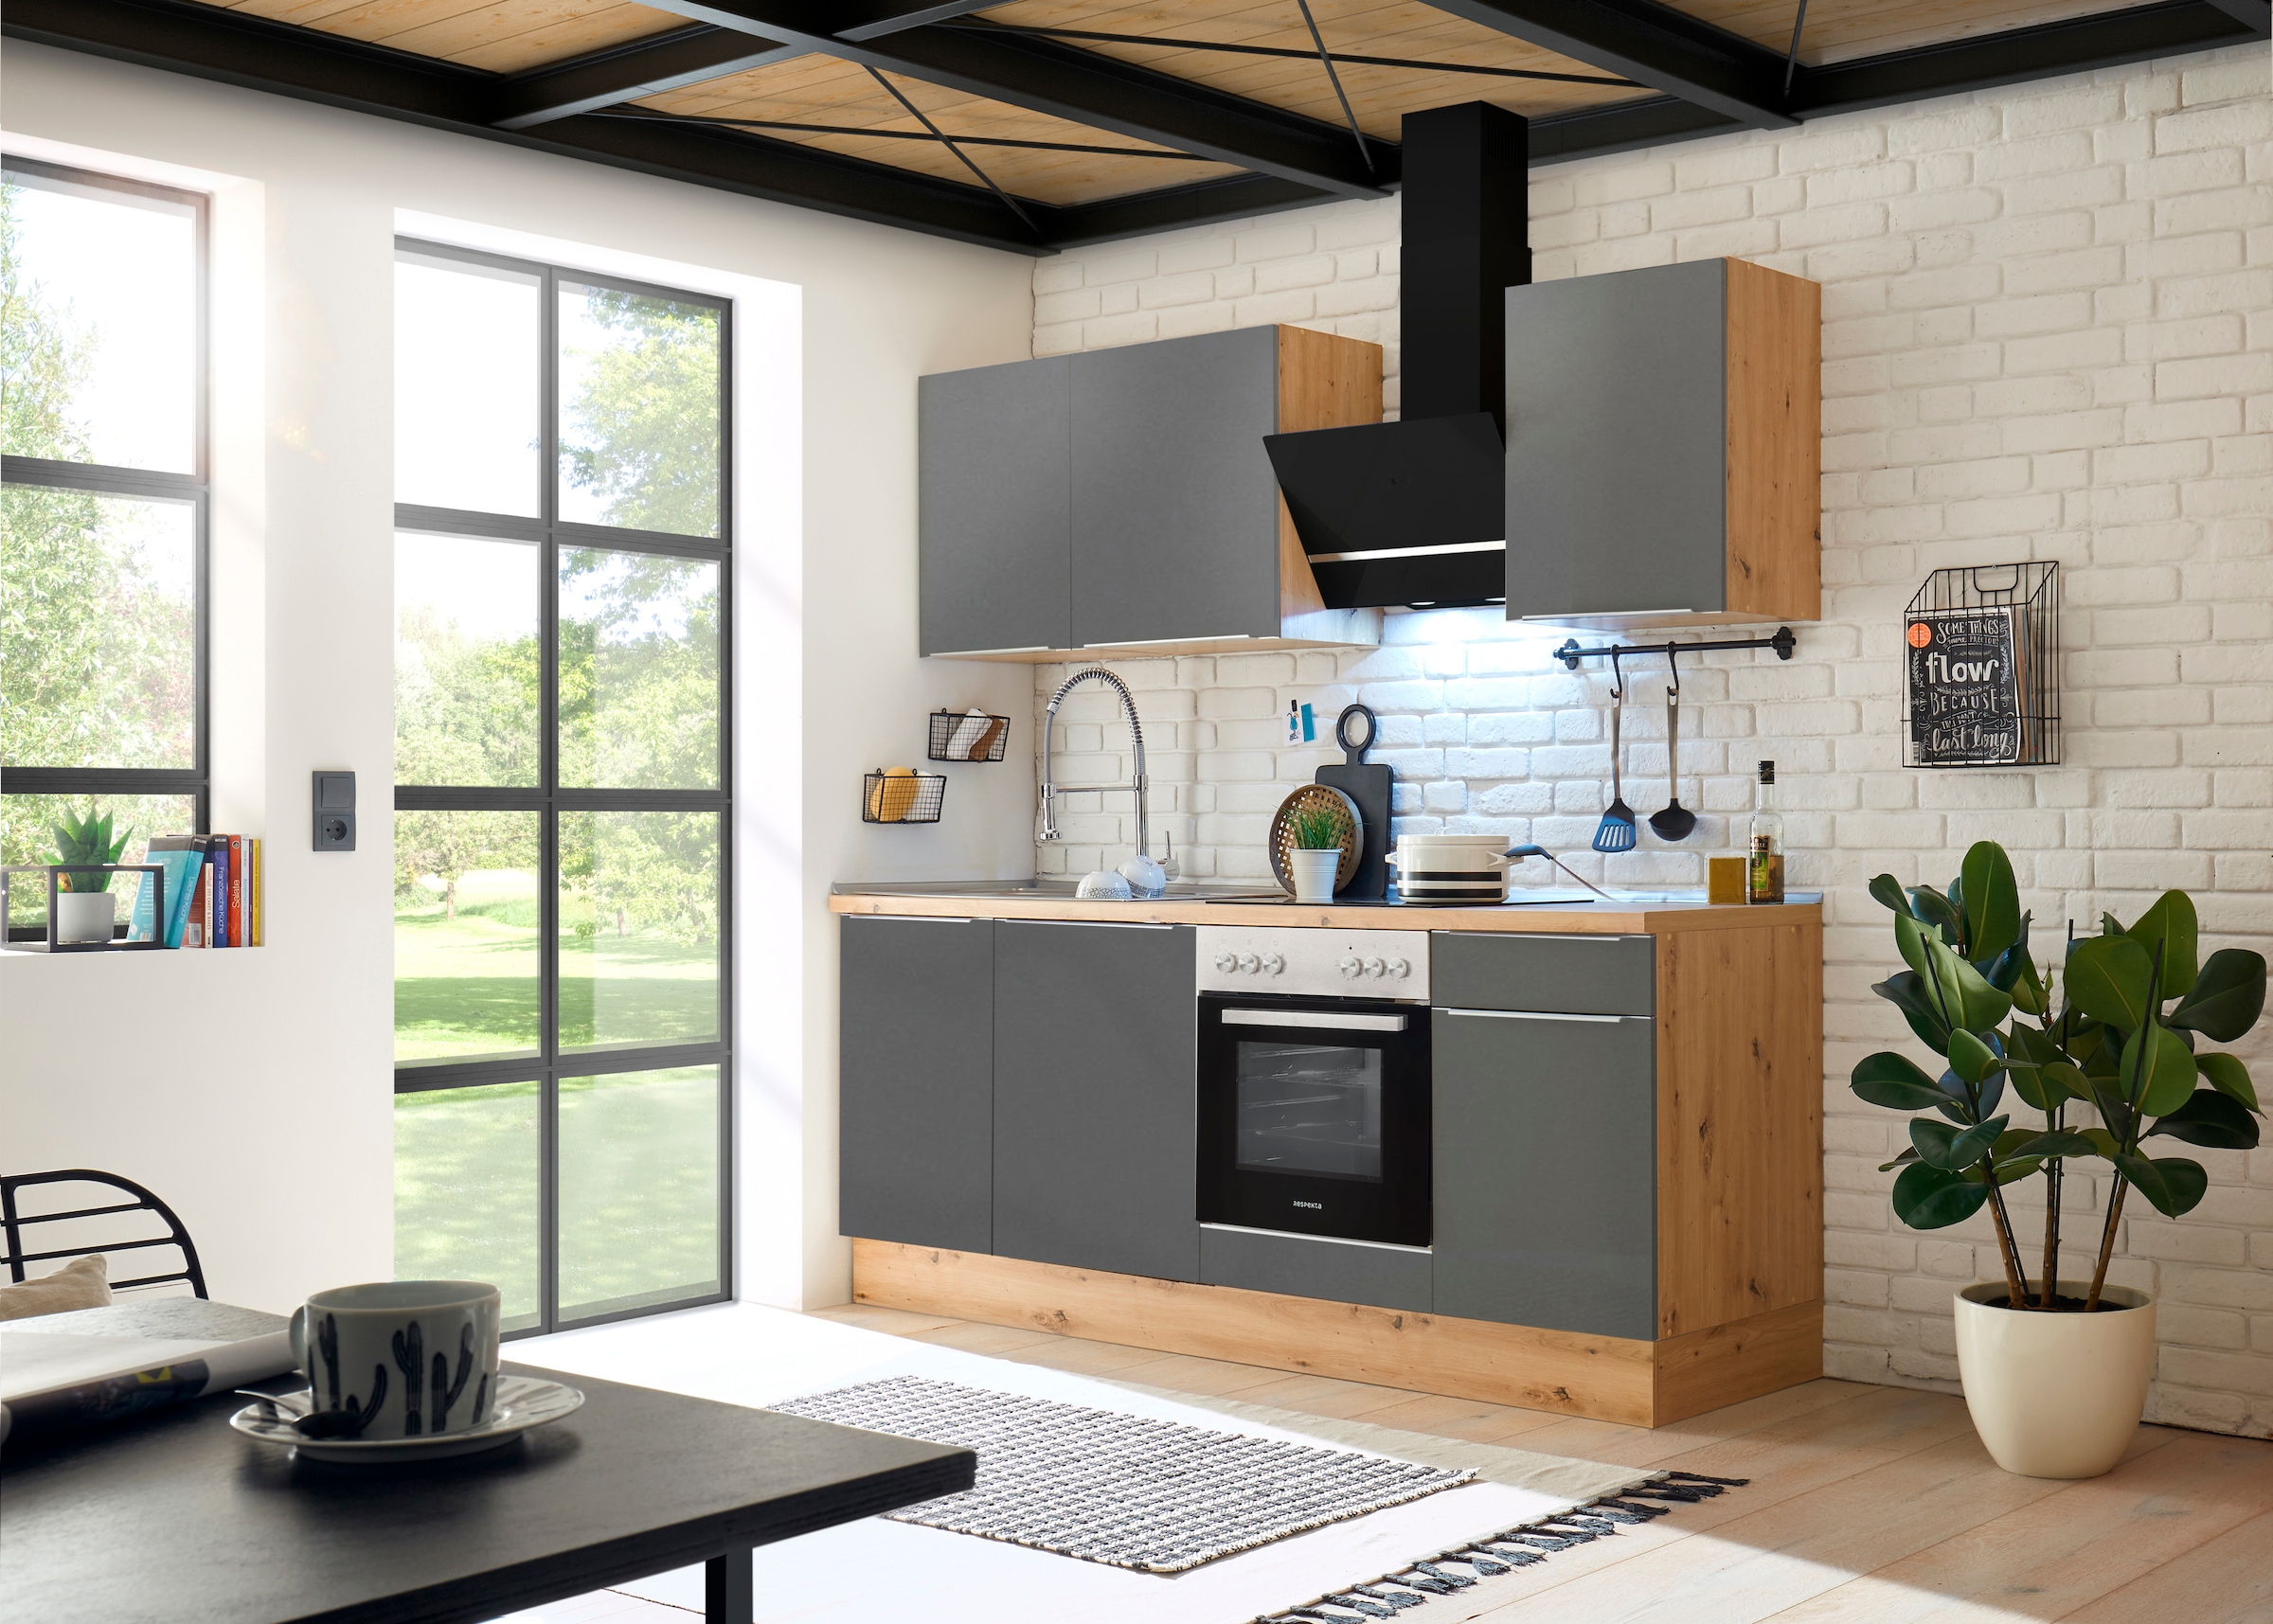 RESPEKTA Küchenzeile »Safado aus der Serie Marleen«, hochwertige Ausstattung wie Soft Close Funktion, Breite 220 cm